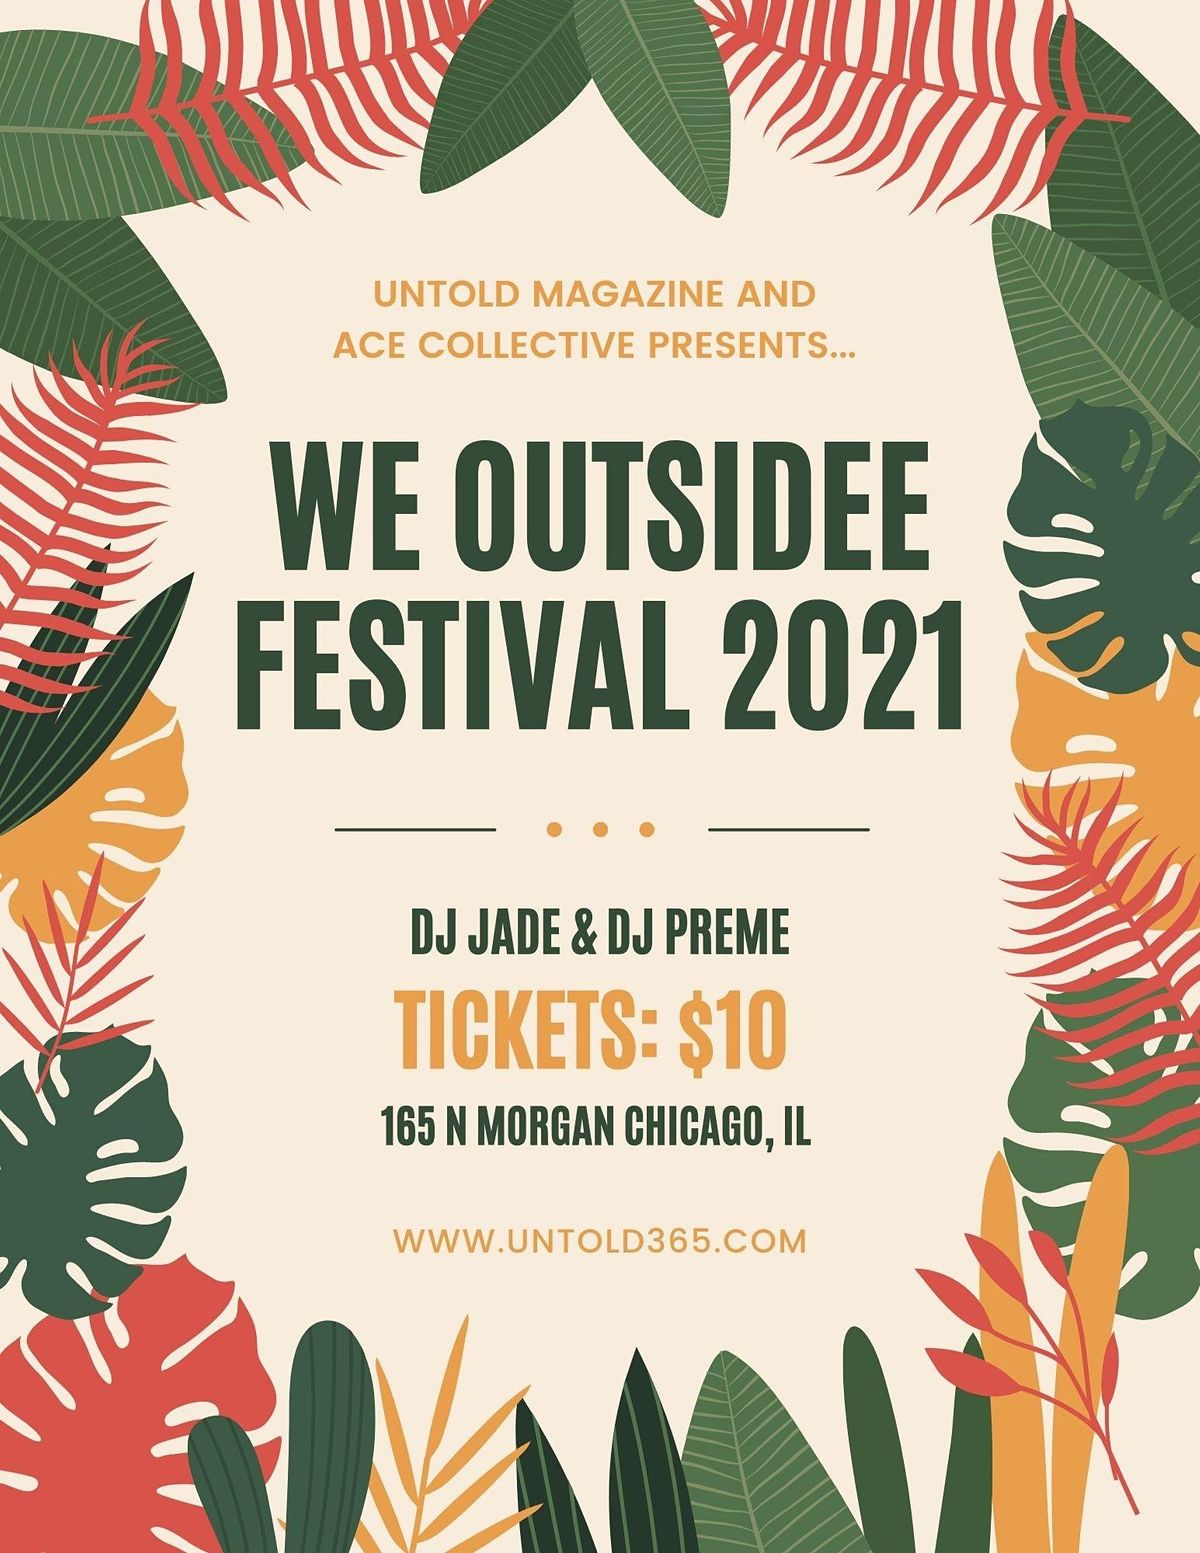 We Outsidee Festival 2021